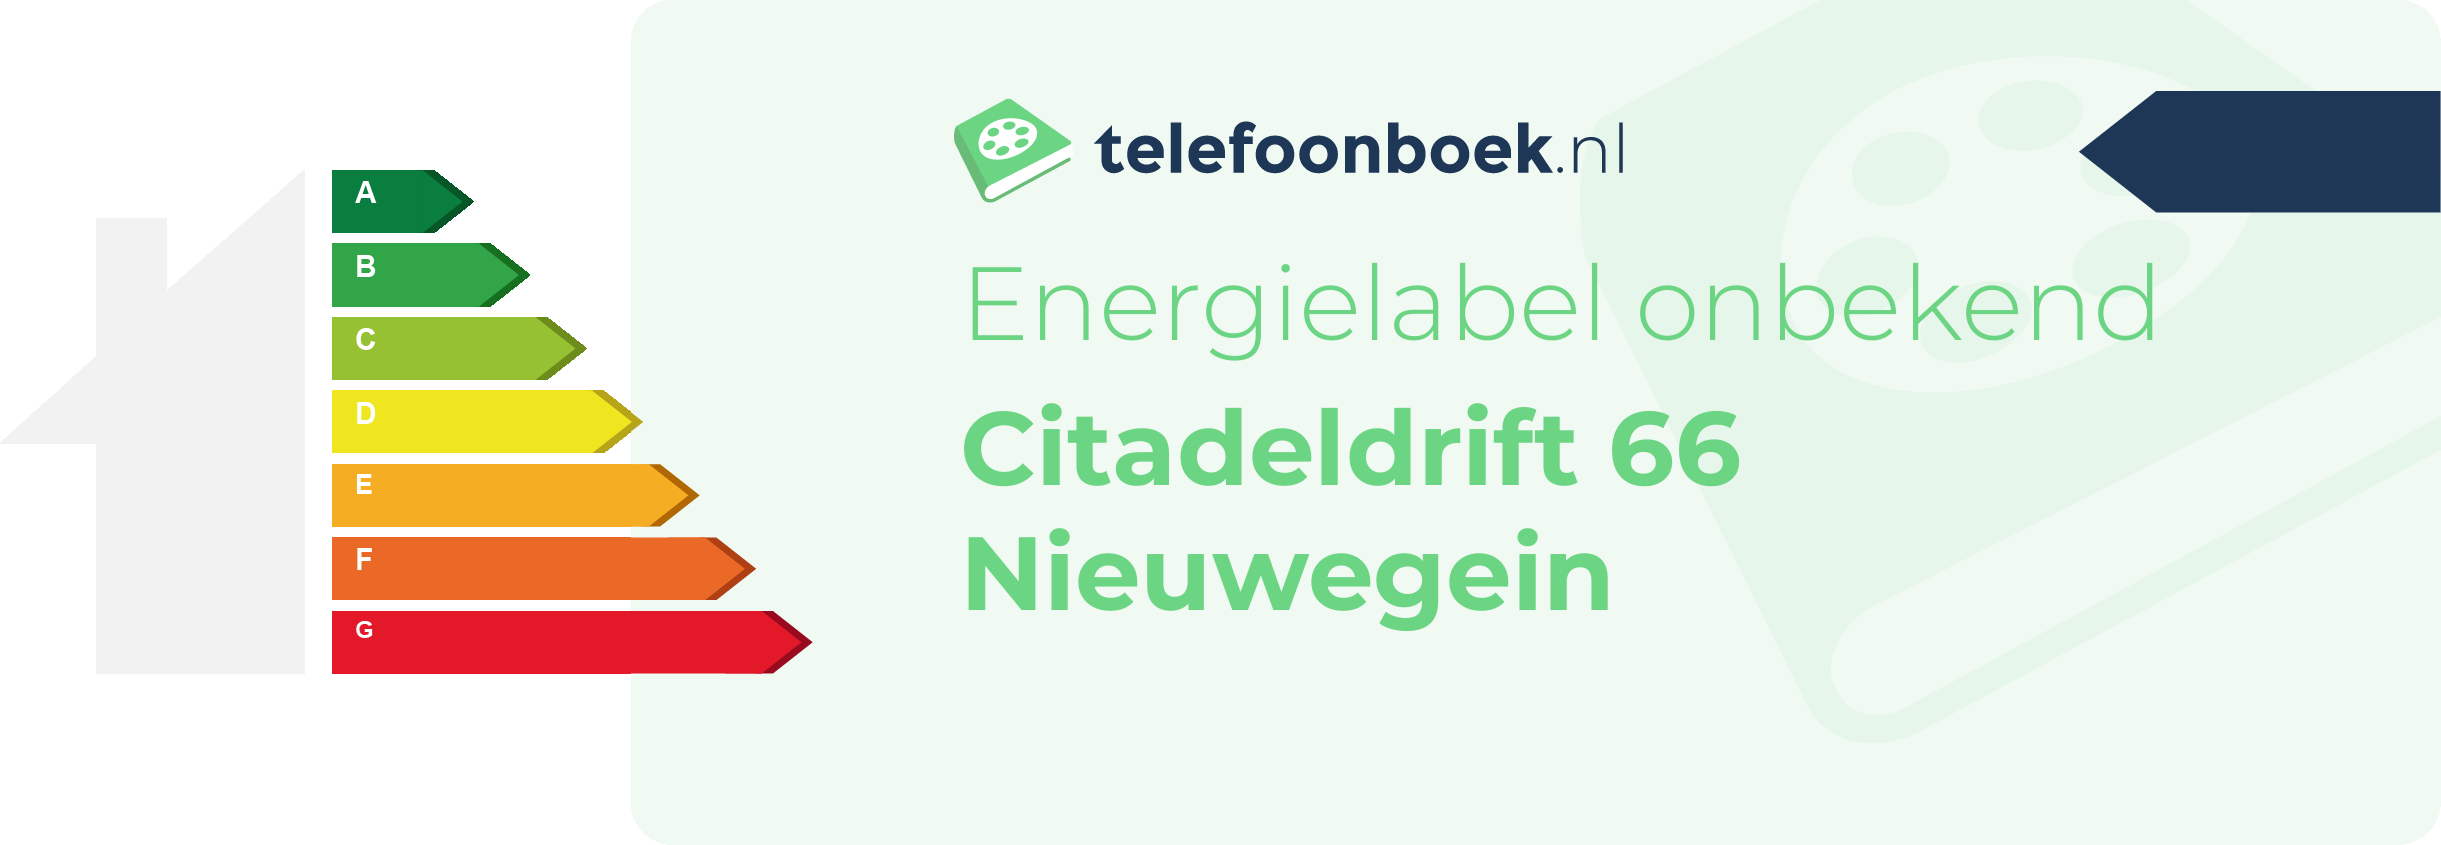 Energielabel Citadeldrift 66 Nieuwegein